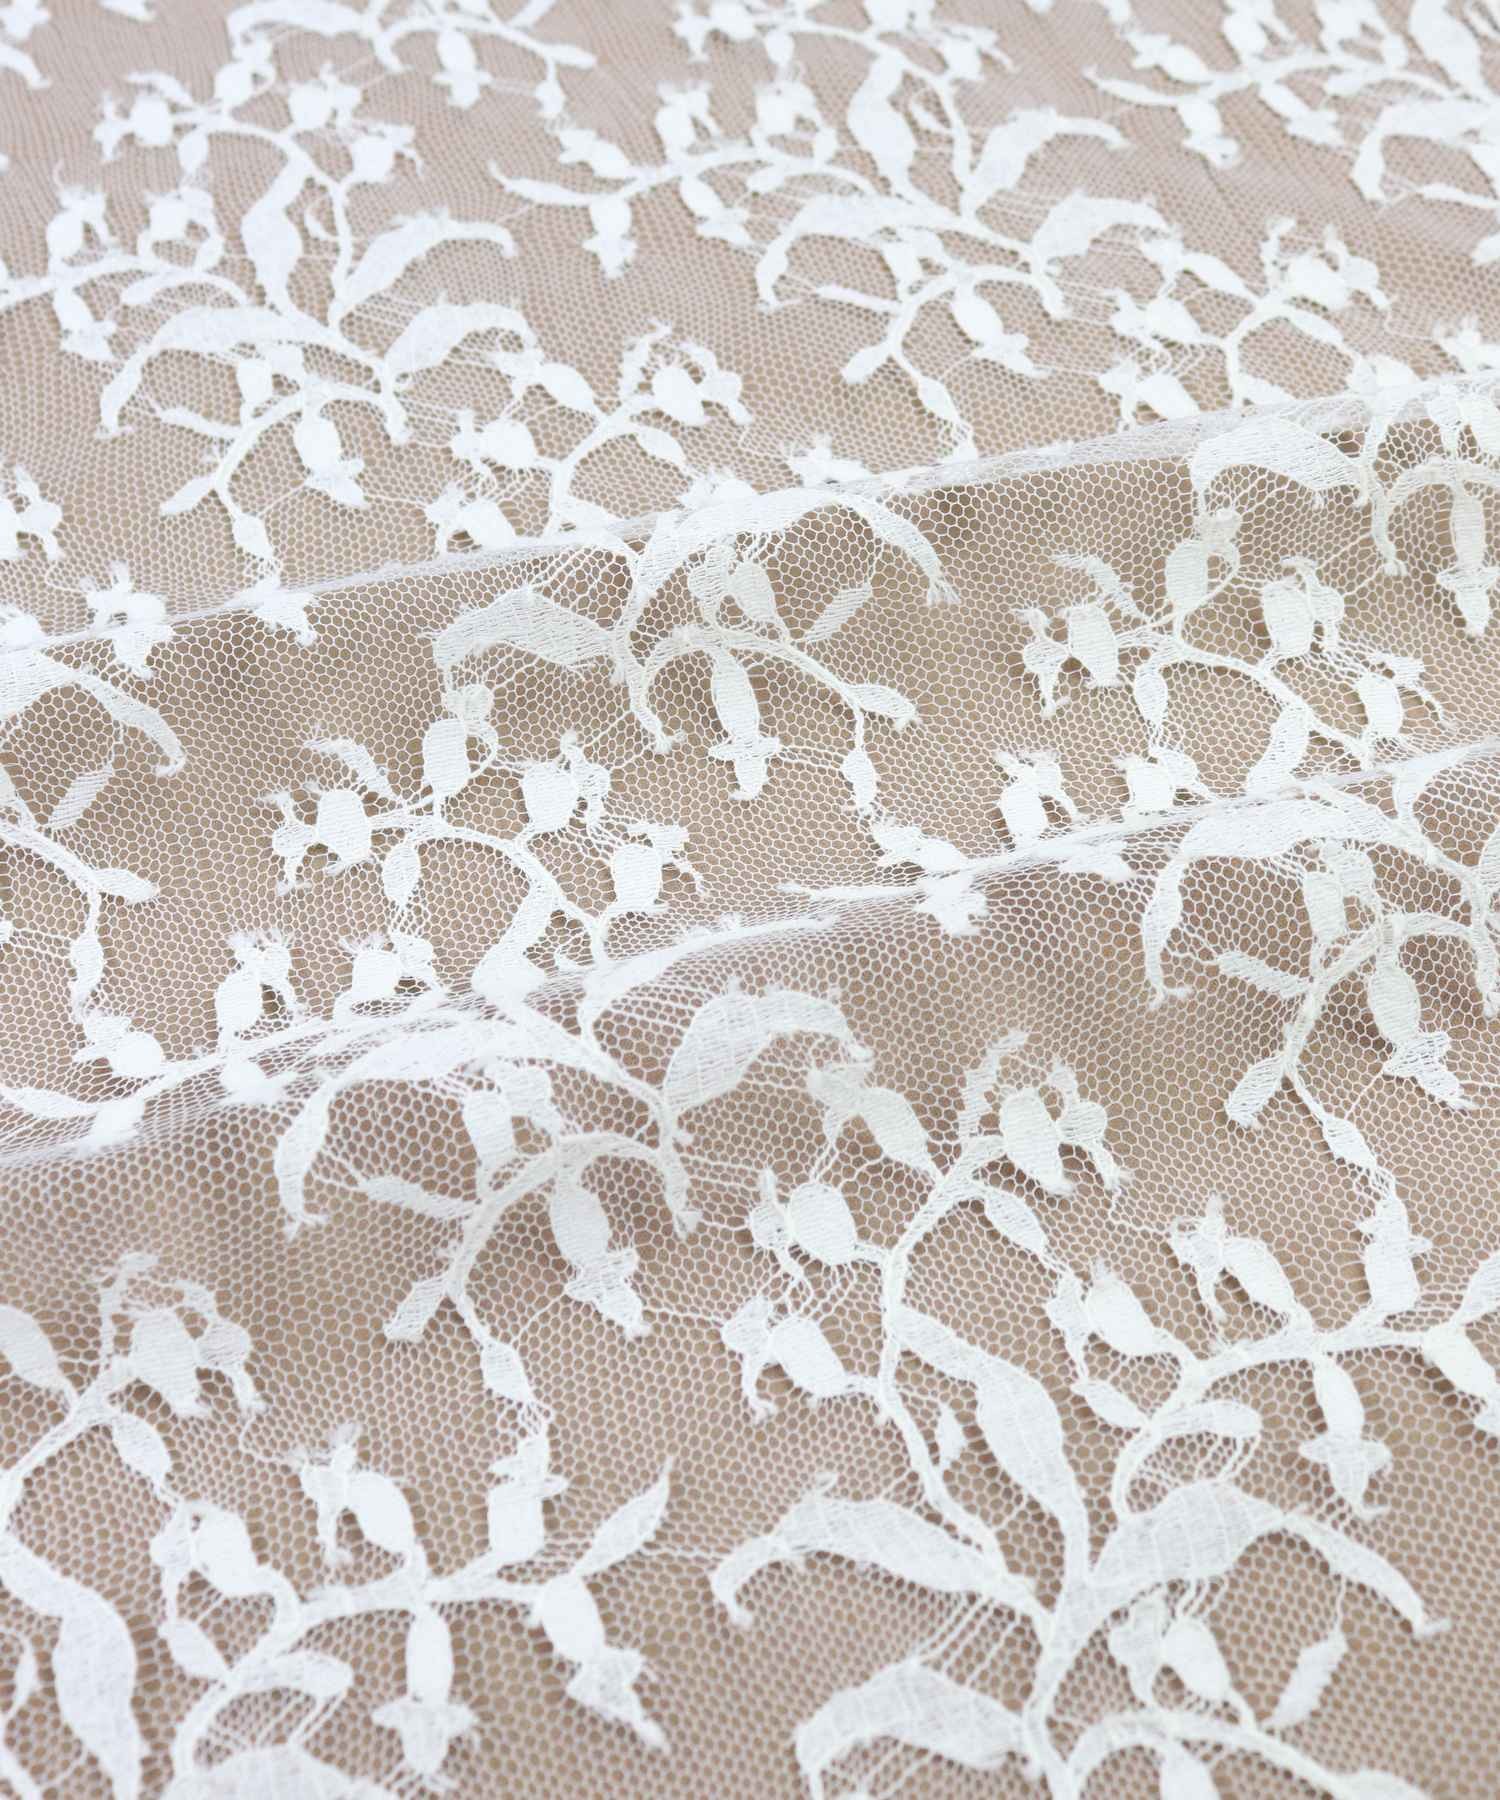 Muguet 90 cm | Lace & embroidery • Sophie Hallette